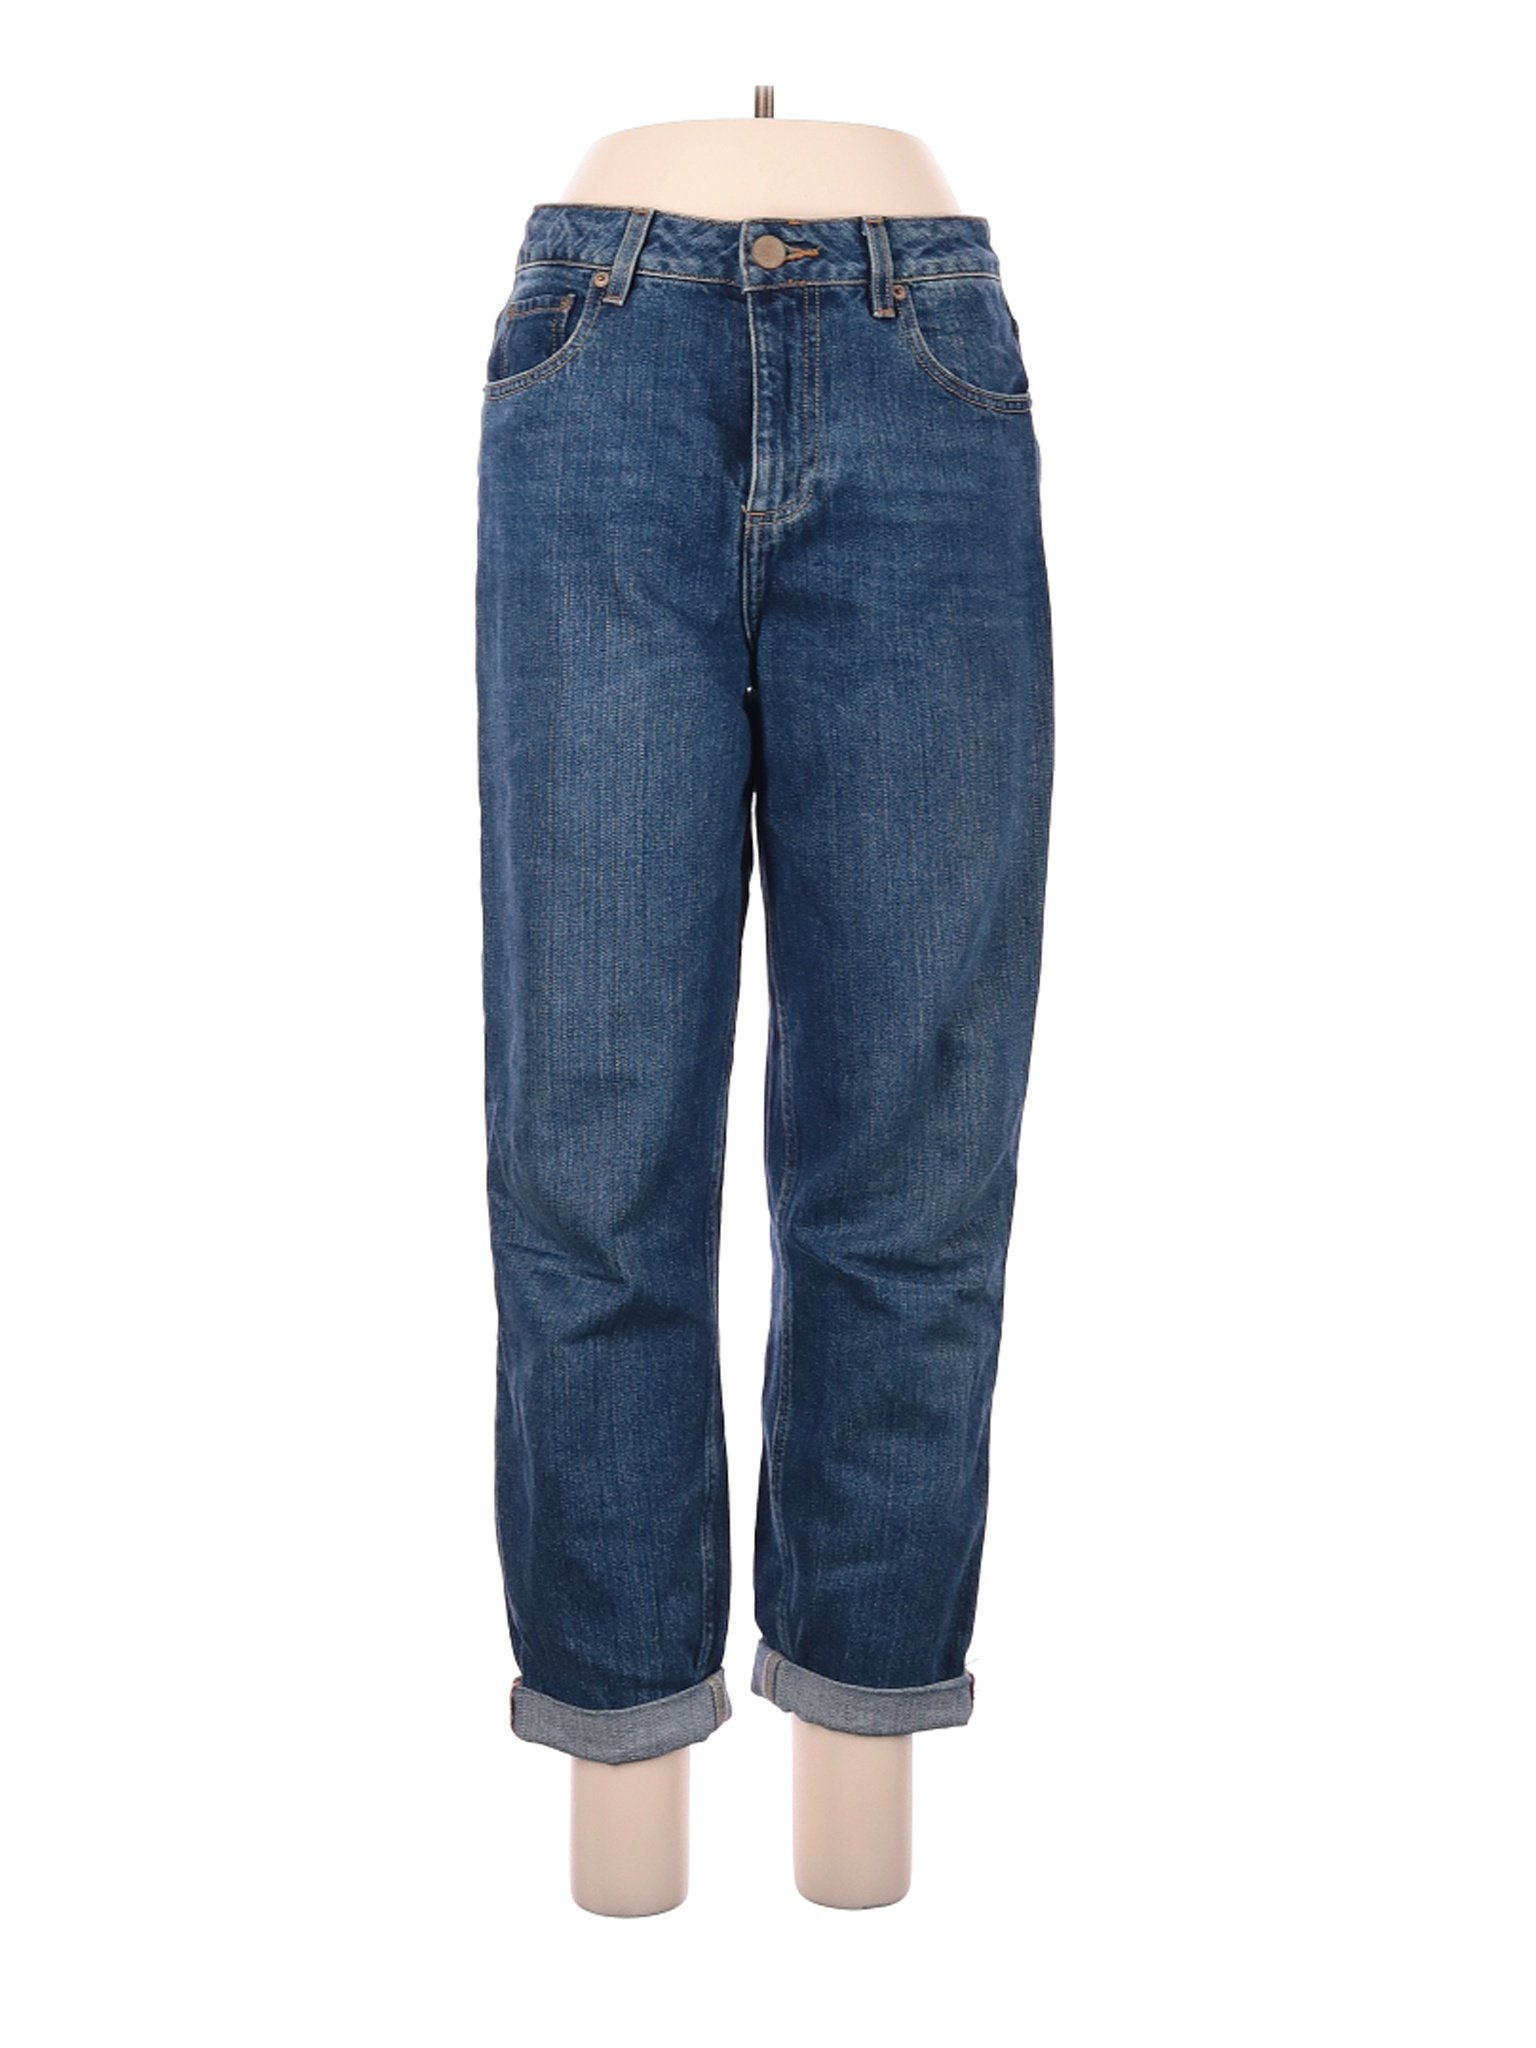 ASOS Women Blue Jeans 28W | eBay